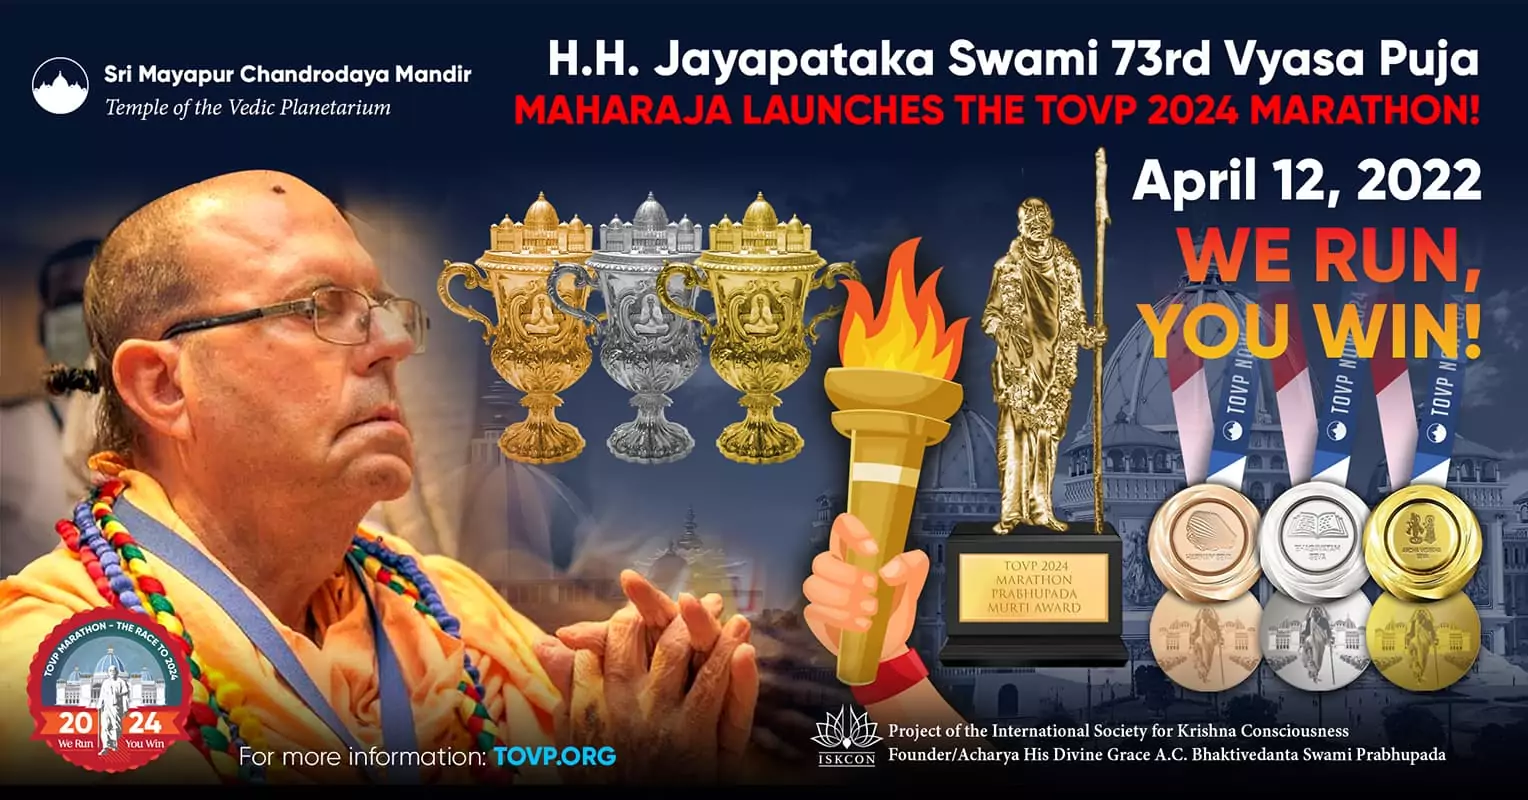 HH জয়পতাকা স্বামী তার 73 তম ব্যাস পূজা উদযাপনে TOVP 2024 ম্যারাথনের আনুষ্ঠানিক সূচনা করলেন